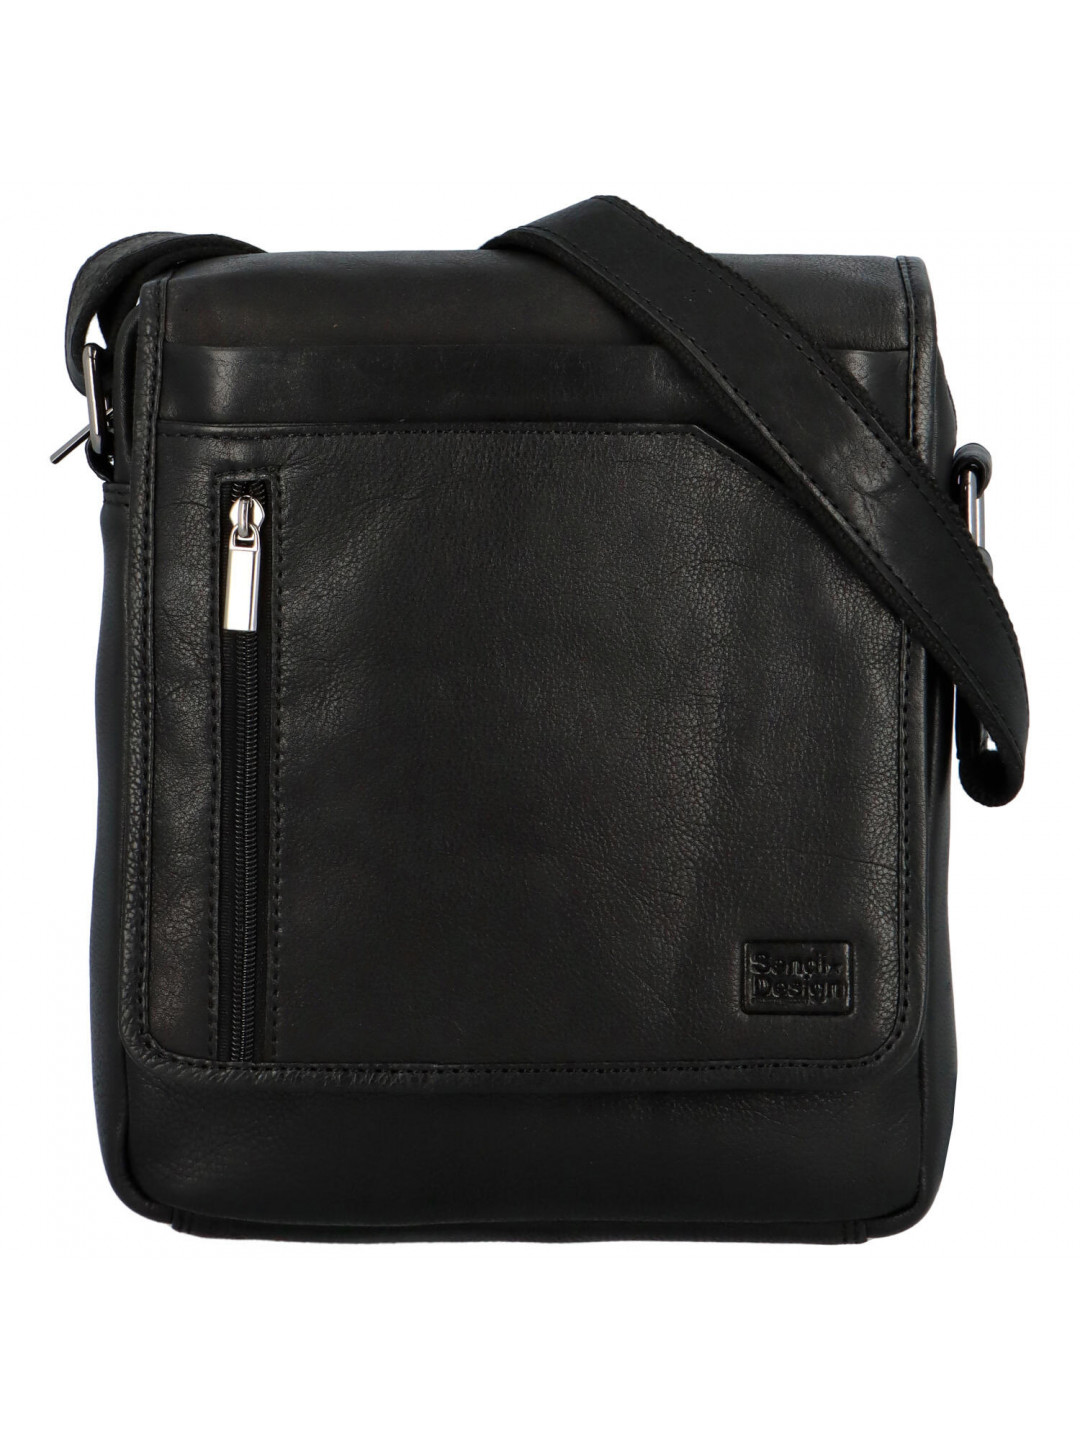 Pánská kožená taška přes rameno černá – SendiDesign Nouwel